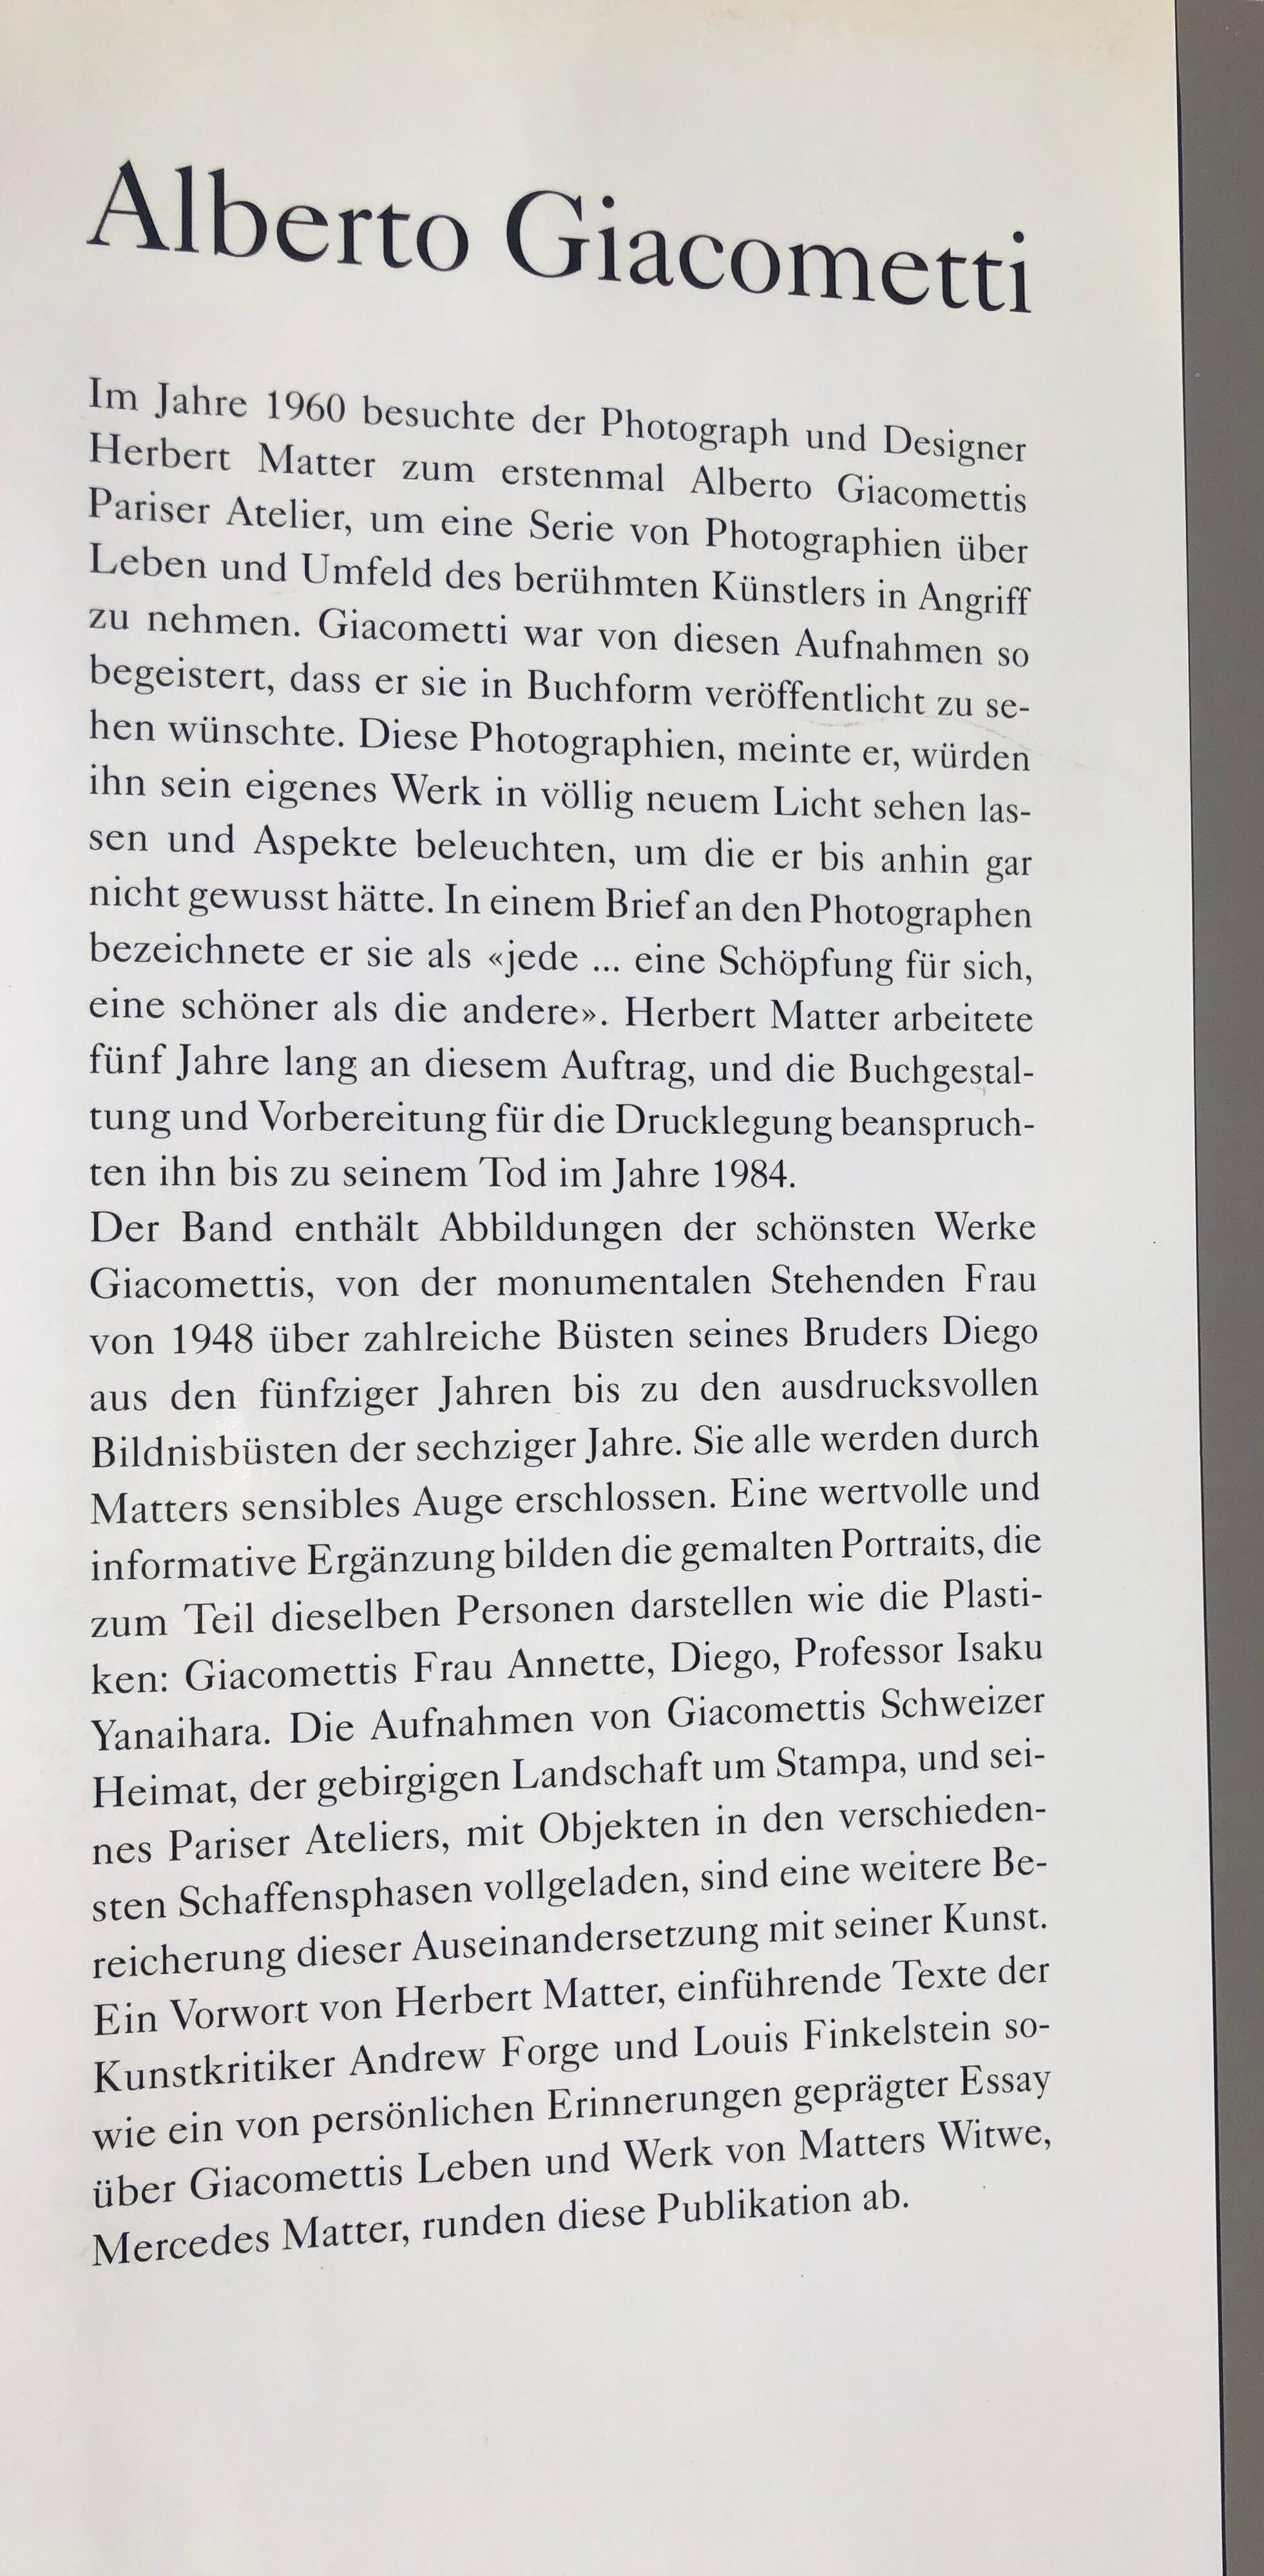 Swiss Alberto Giacometti Photography Album by Herbett Matter, Bern, Switzerland, 1998